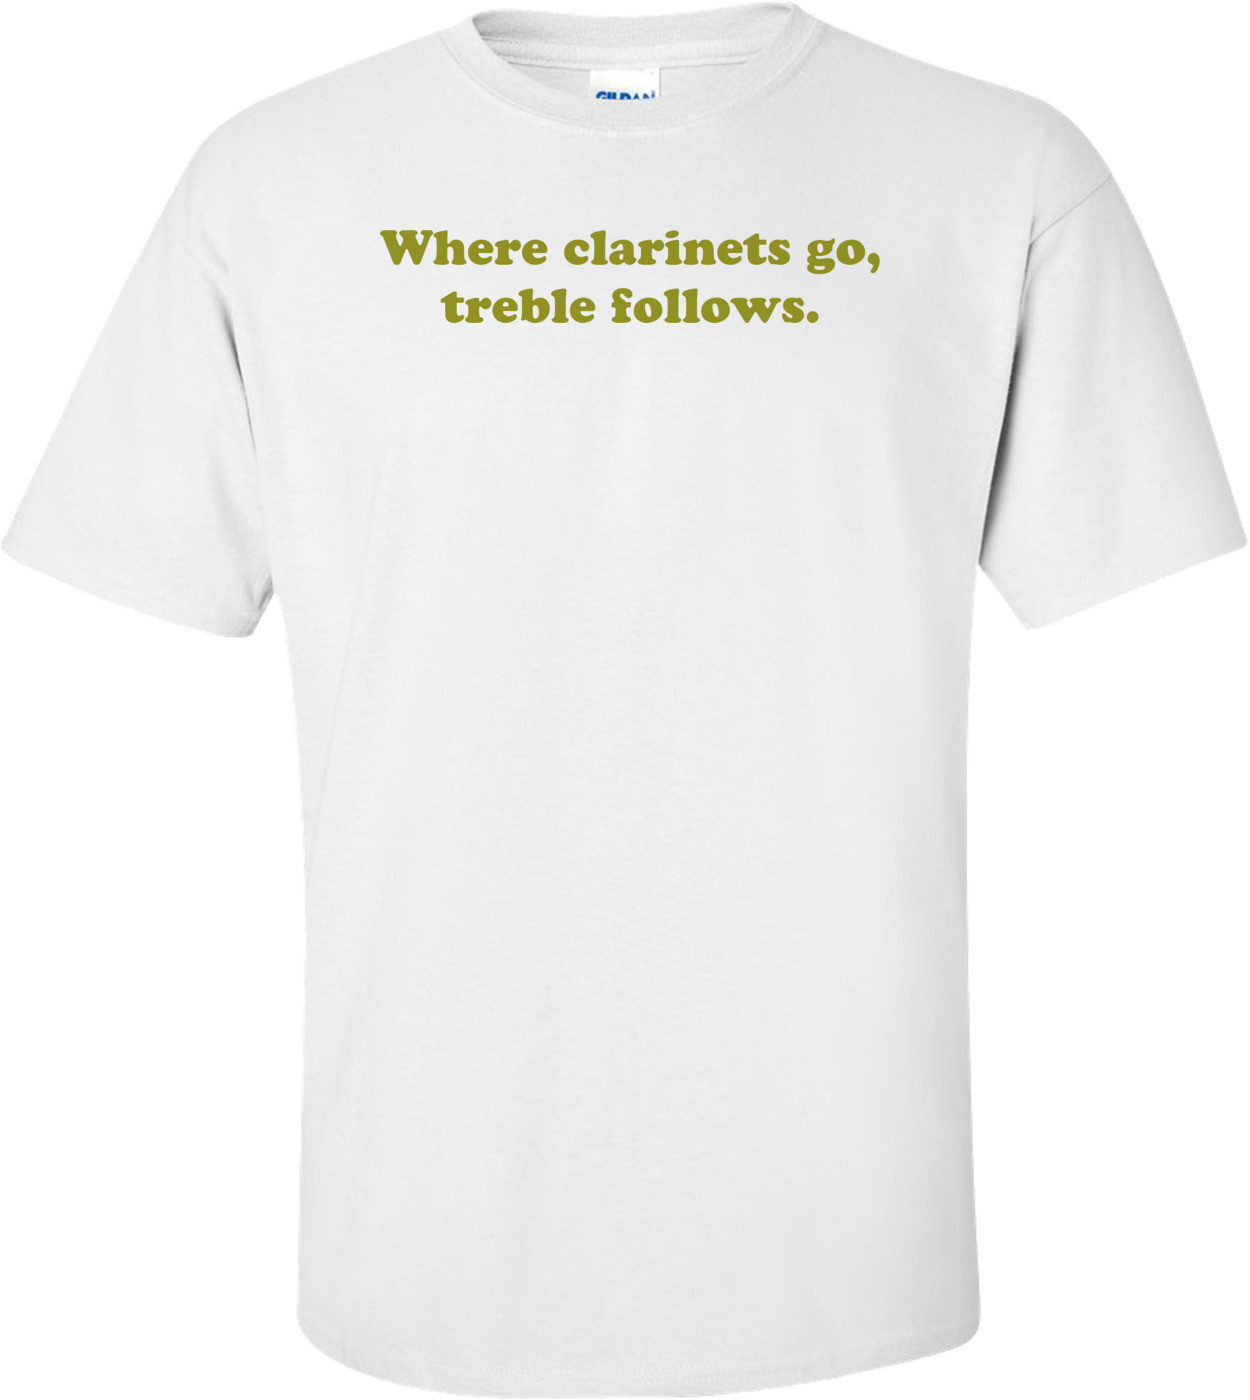 Where clarinets go, treble follows. Shirt